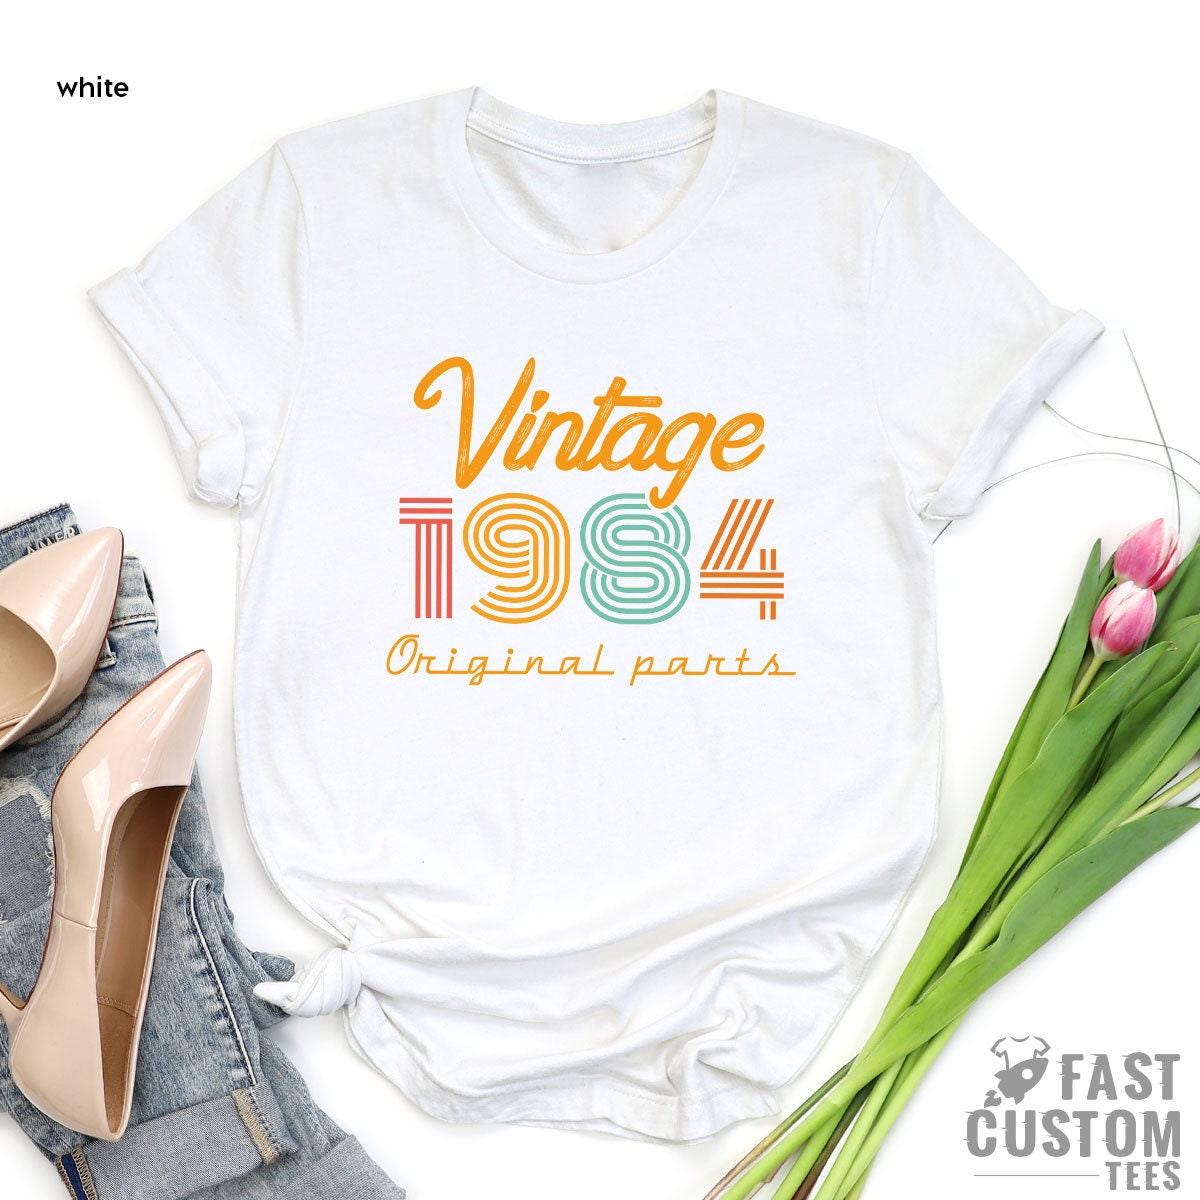 37th Birthday Shirt, Vintage T Shirt, Vintage 1984 Shirt, 37th Birthday Gift For Women, 37th Birthday Shirt Men, Retro Shirt, Vintage Shirts - Fastdeliverytees.com